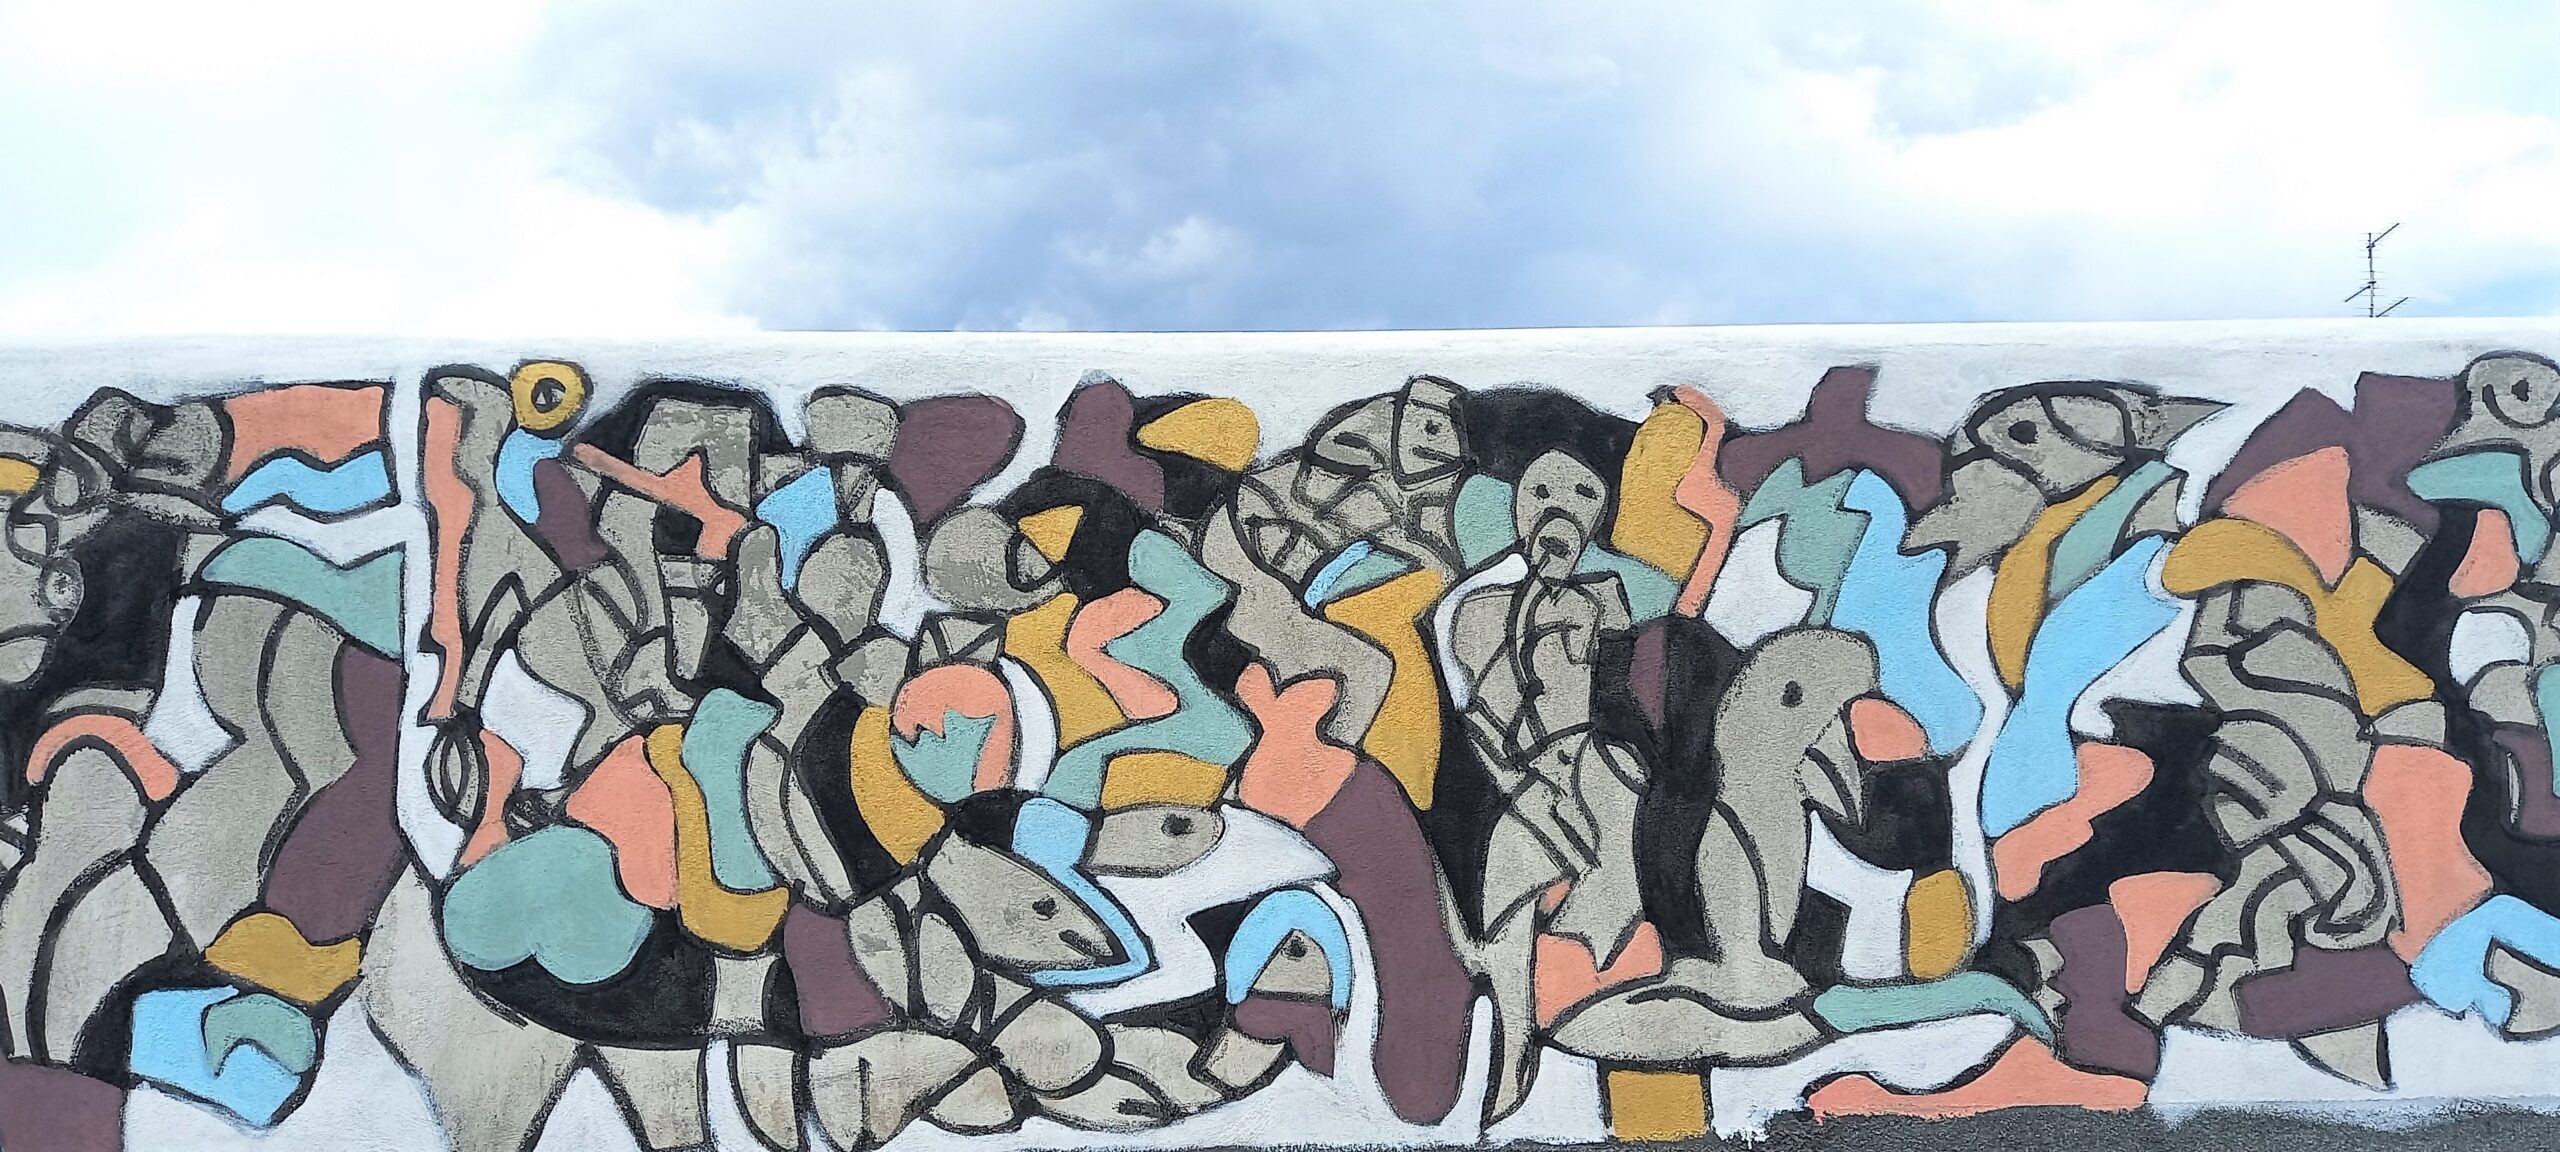 4 algoritmos de murales de paz por artista siciliano cortile delle nevi